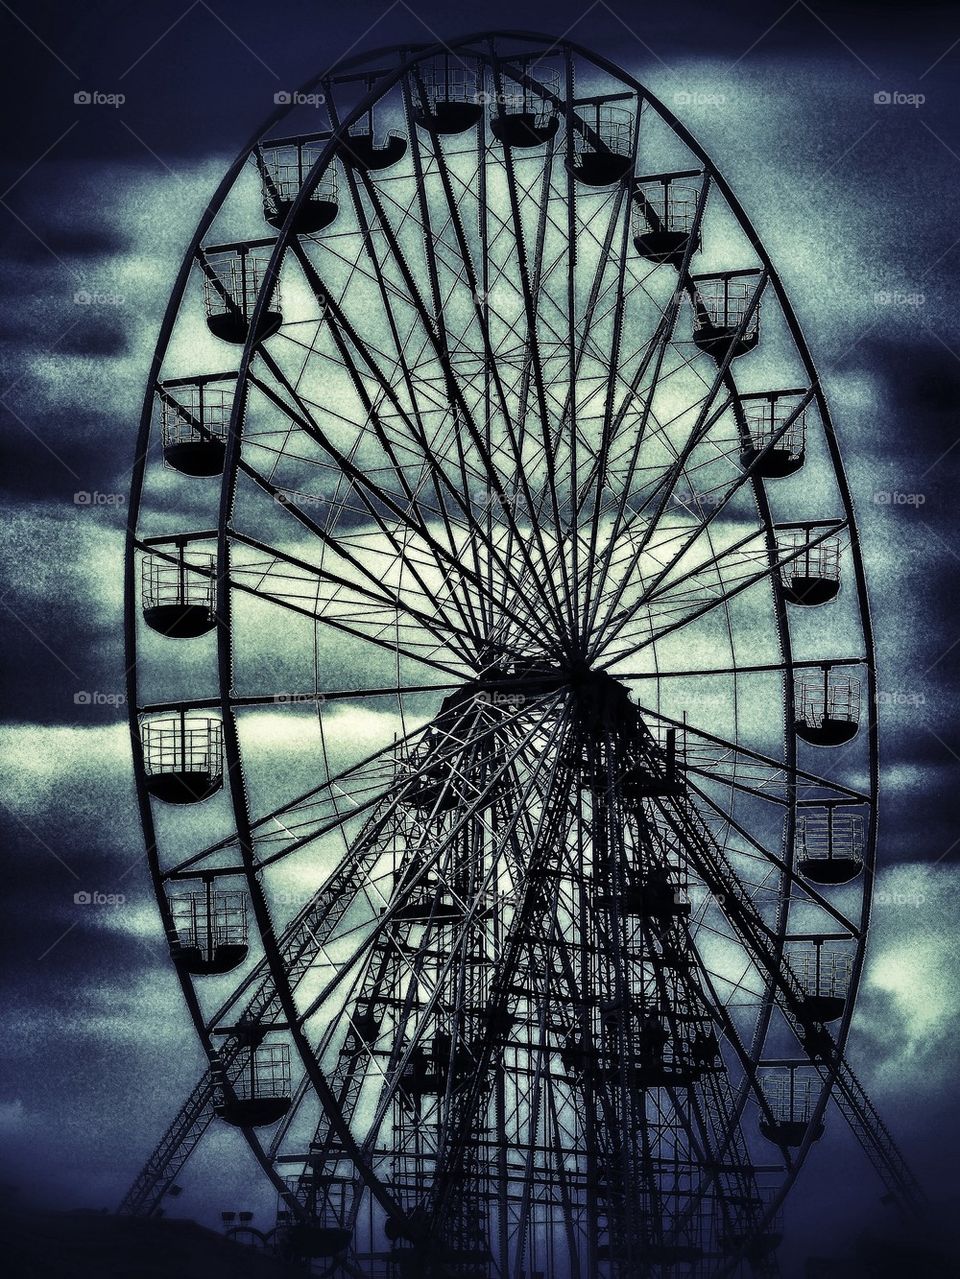 Big wheel